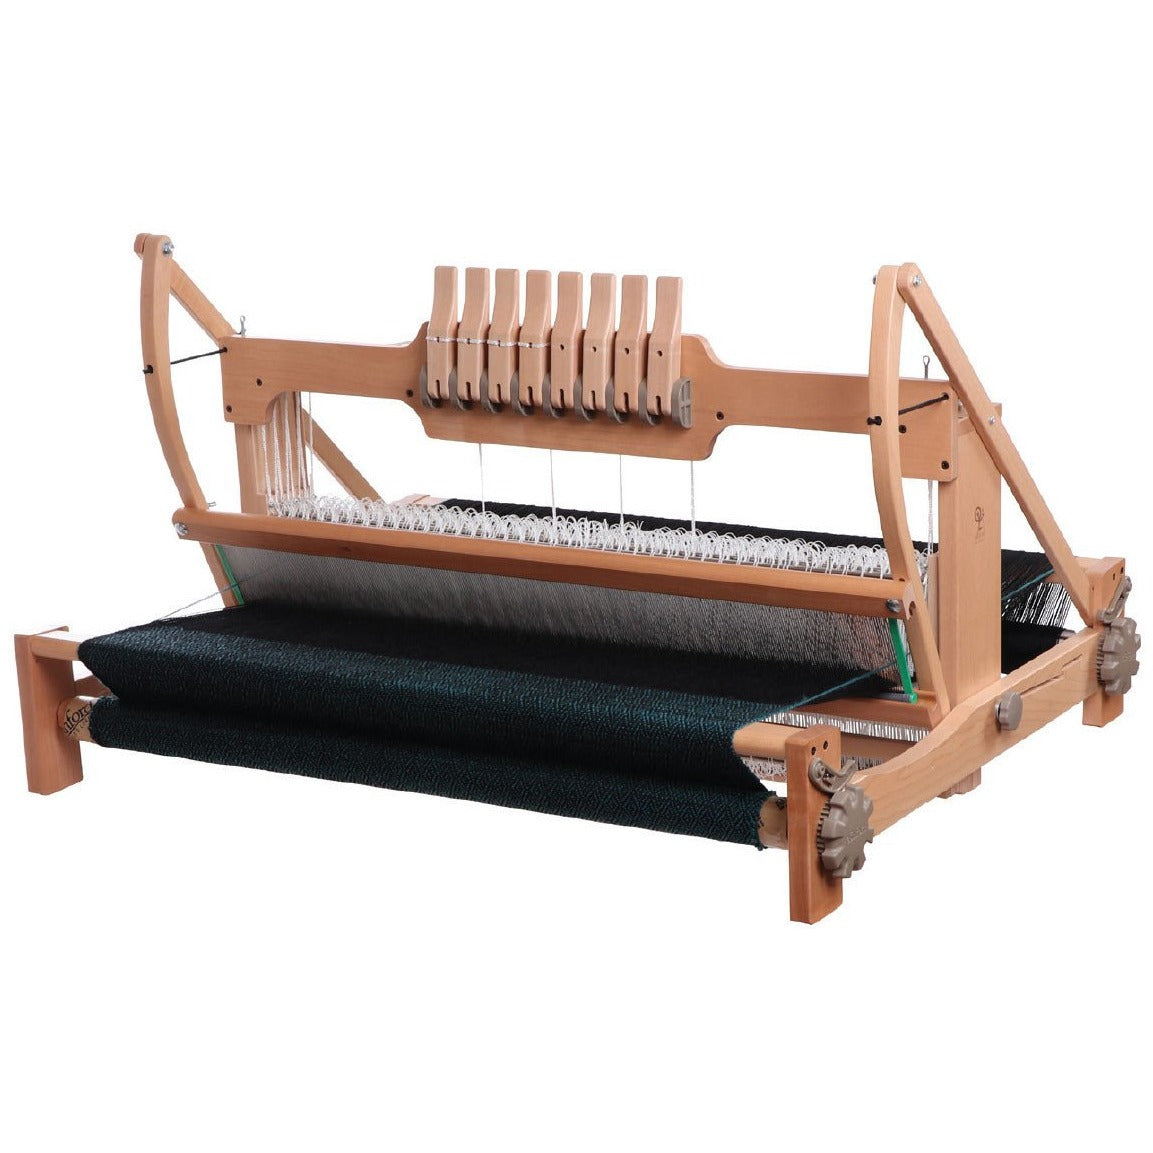 Ashford Table Loom - FREE Shipping